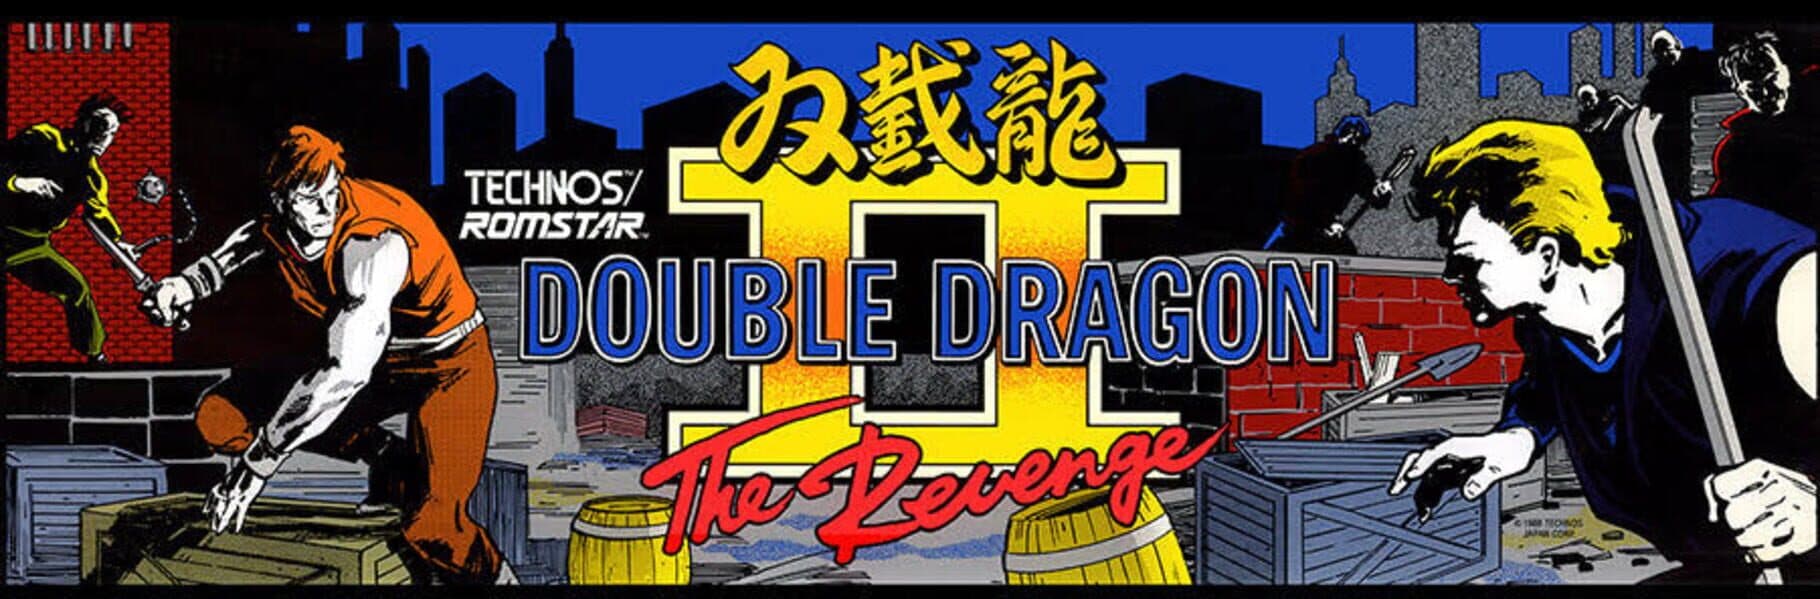 Double Dragon II: The Revenge Image